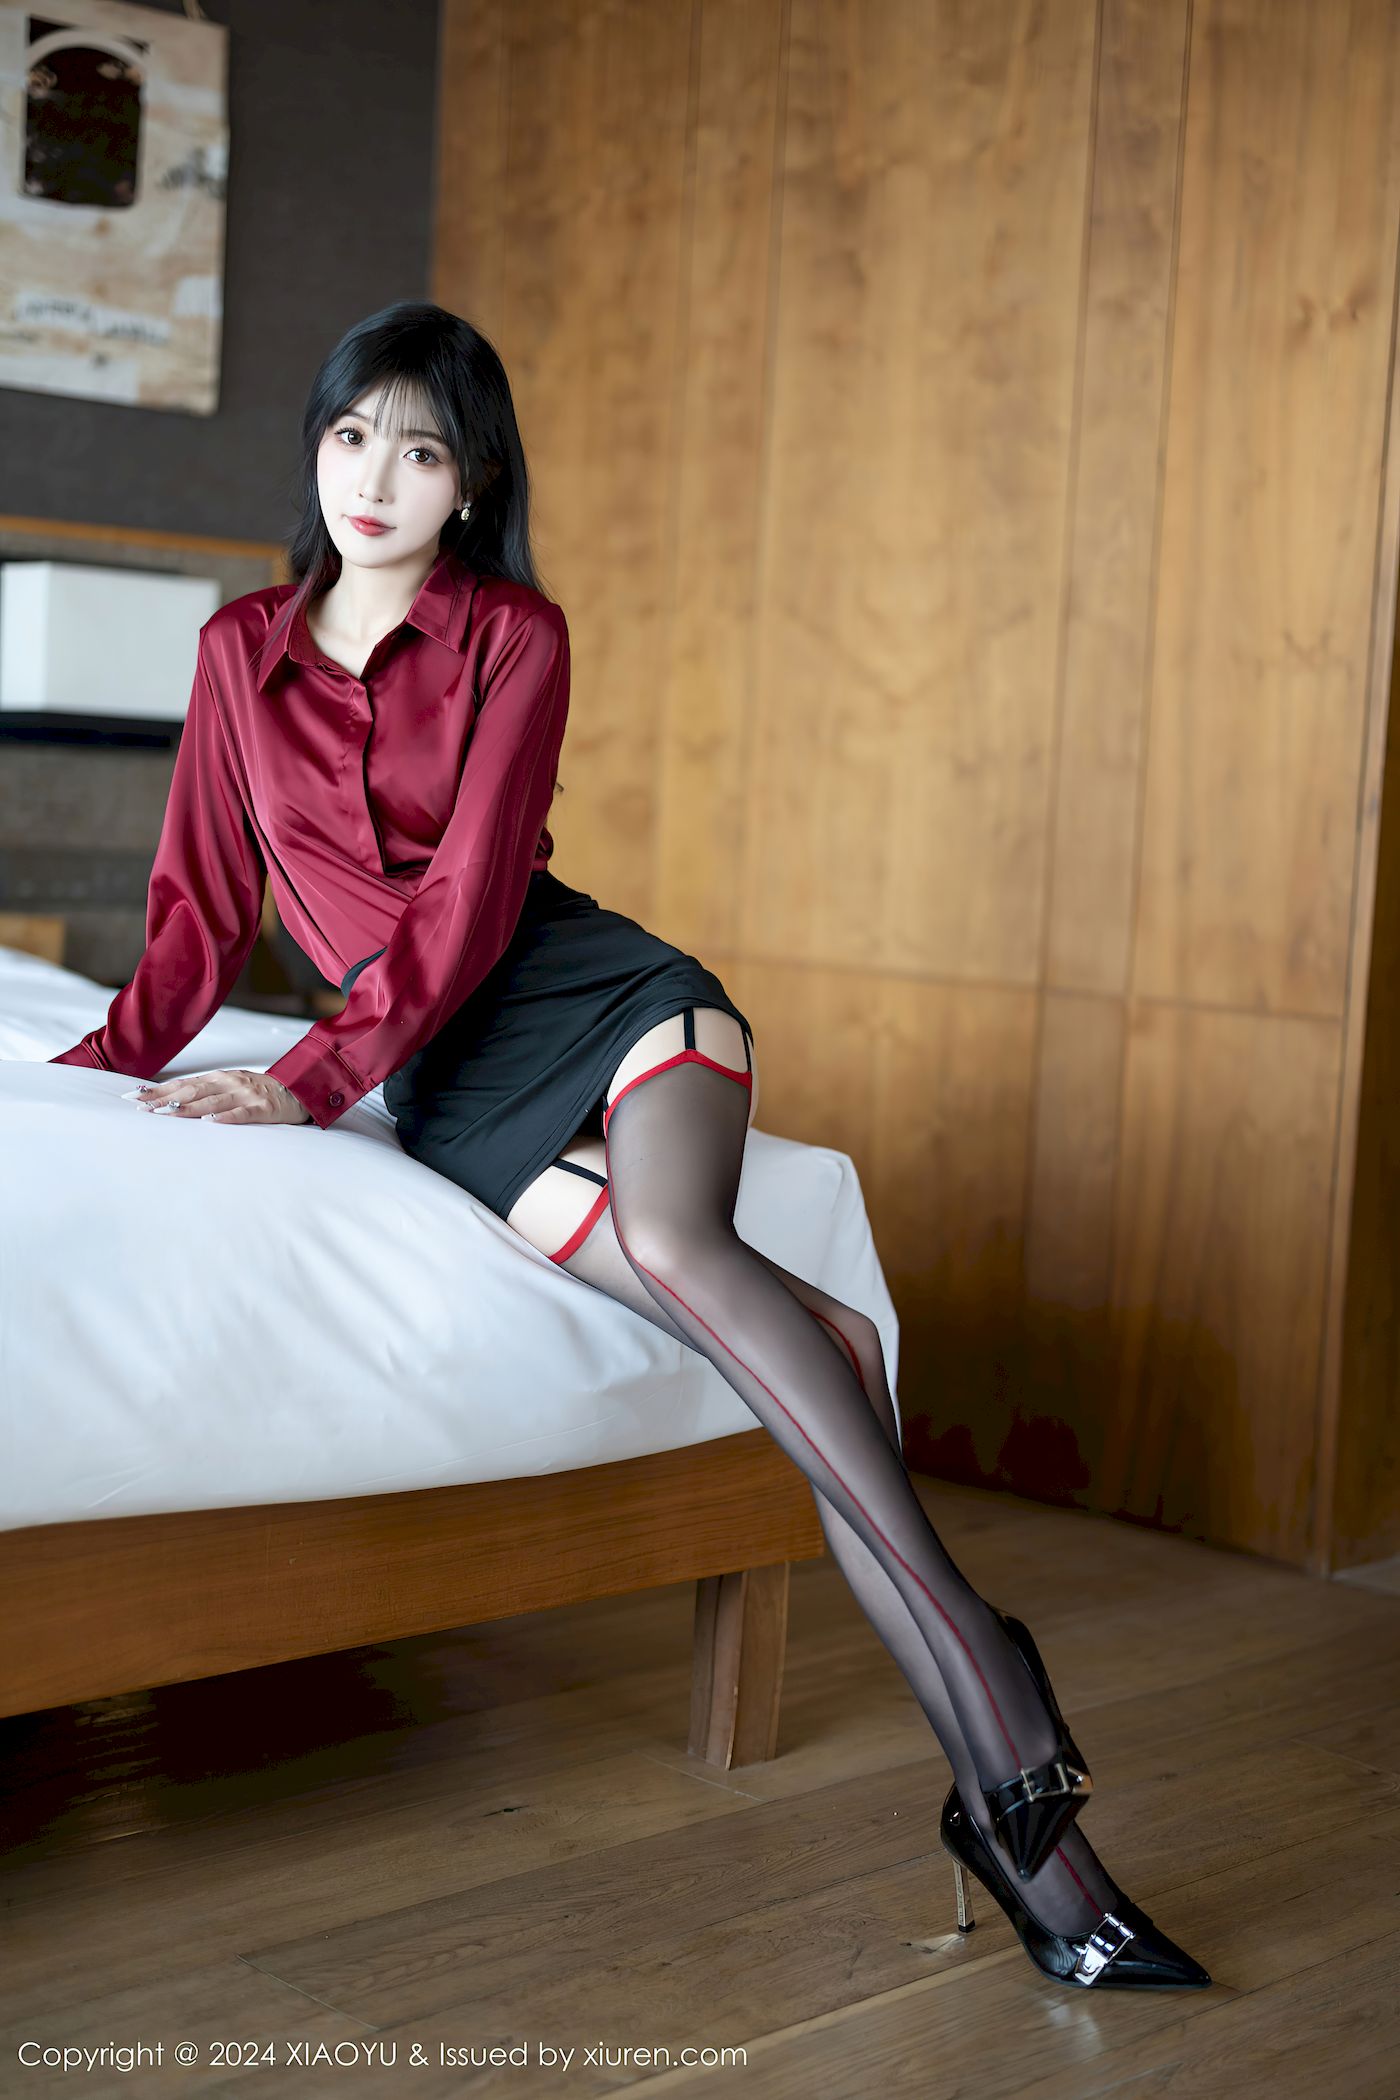 林星阑红色上衣搭配黑色短裙哈尔滨旅拍